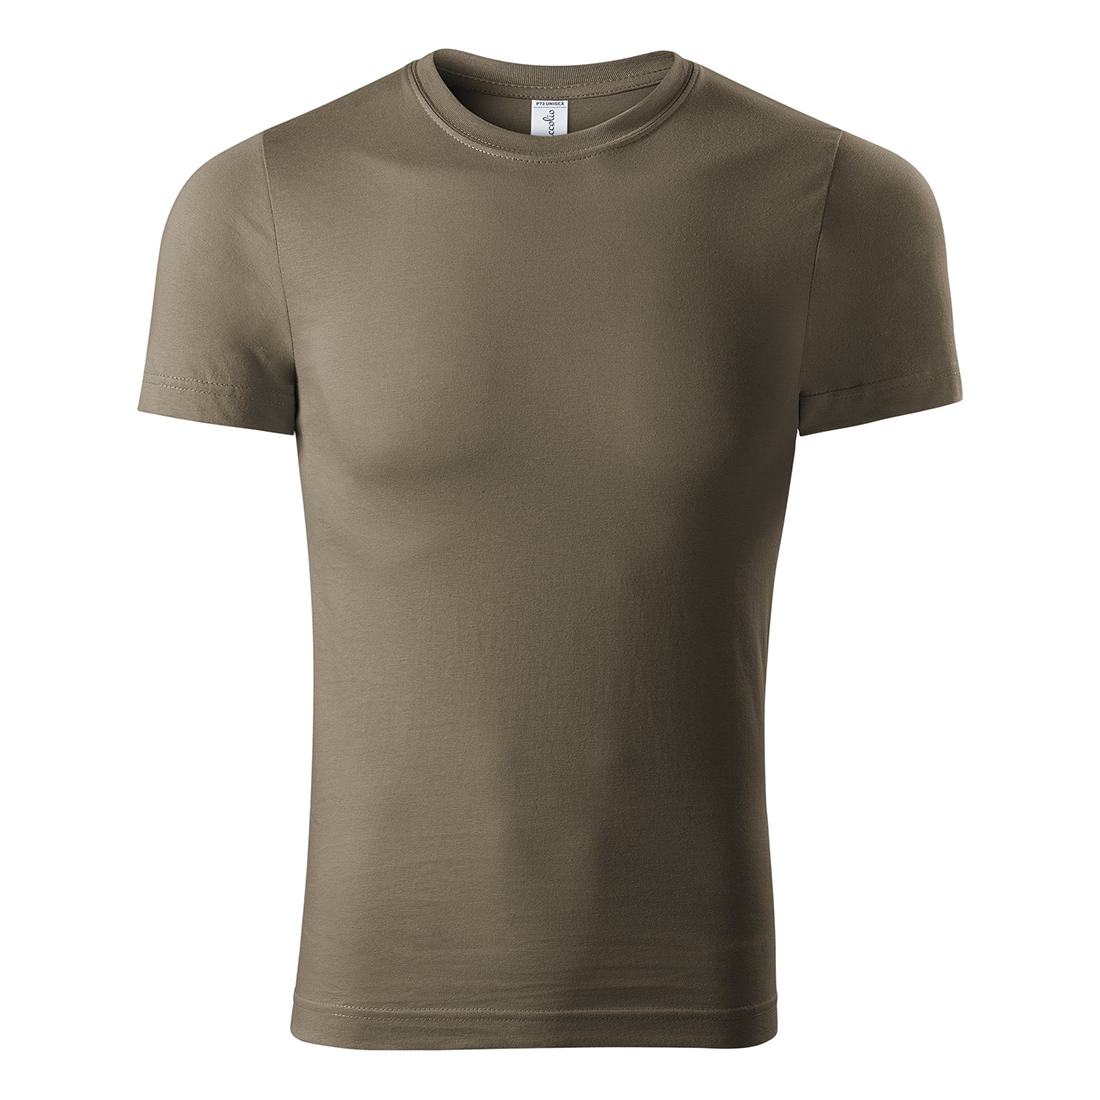 Camiseta unisex 100% algodón - Ropa de protección